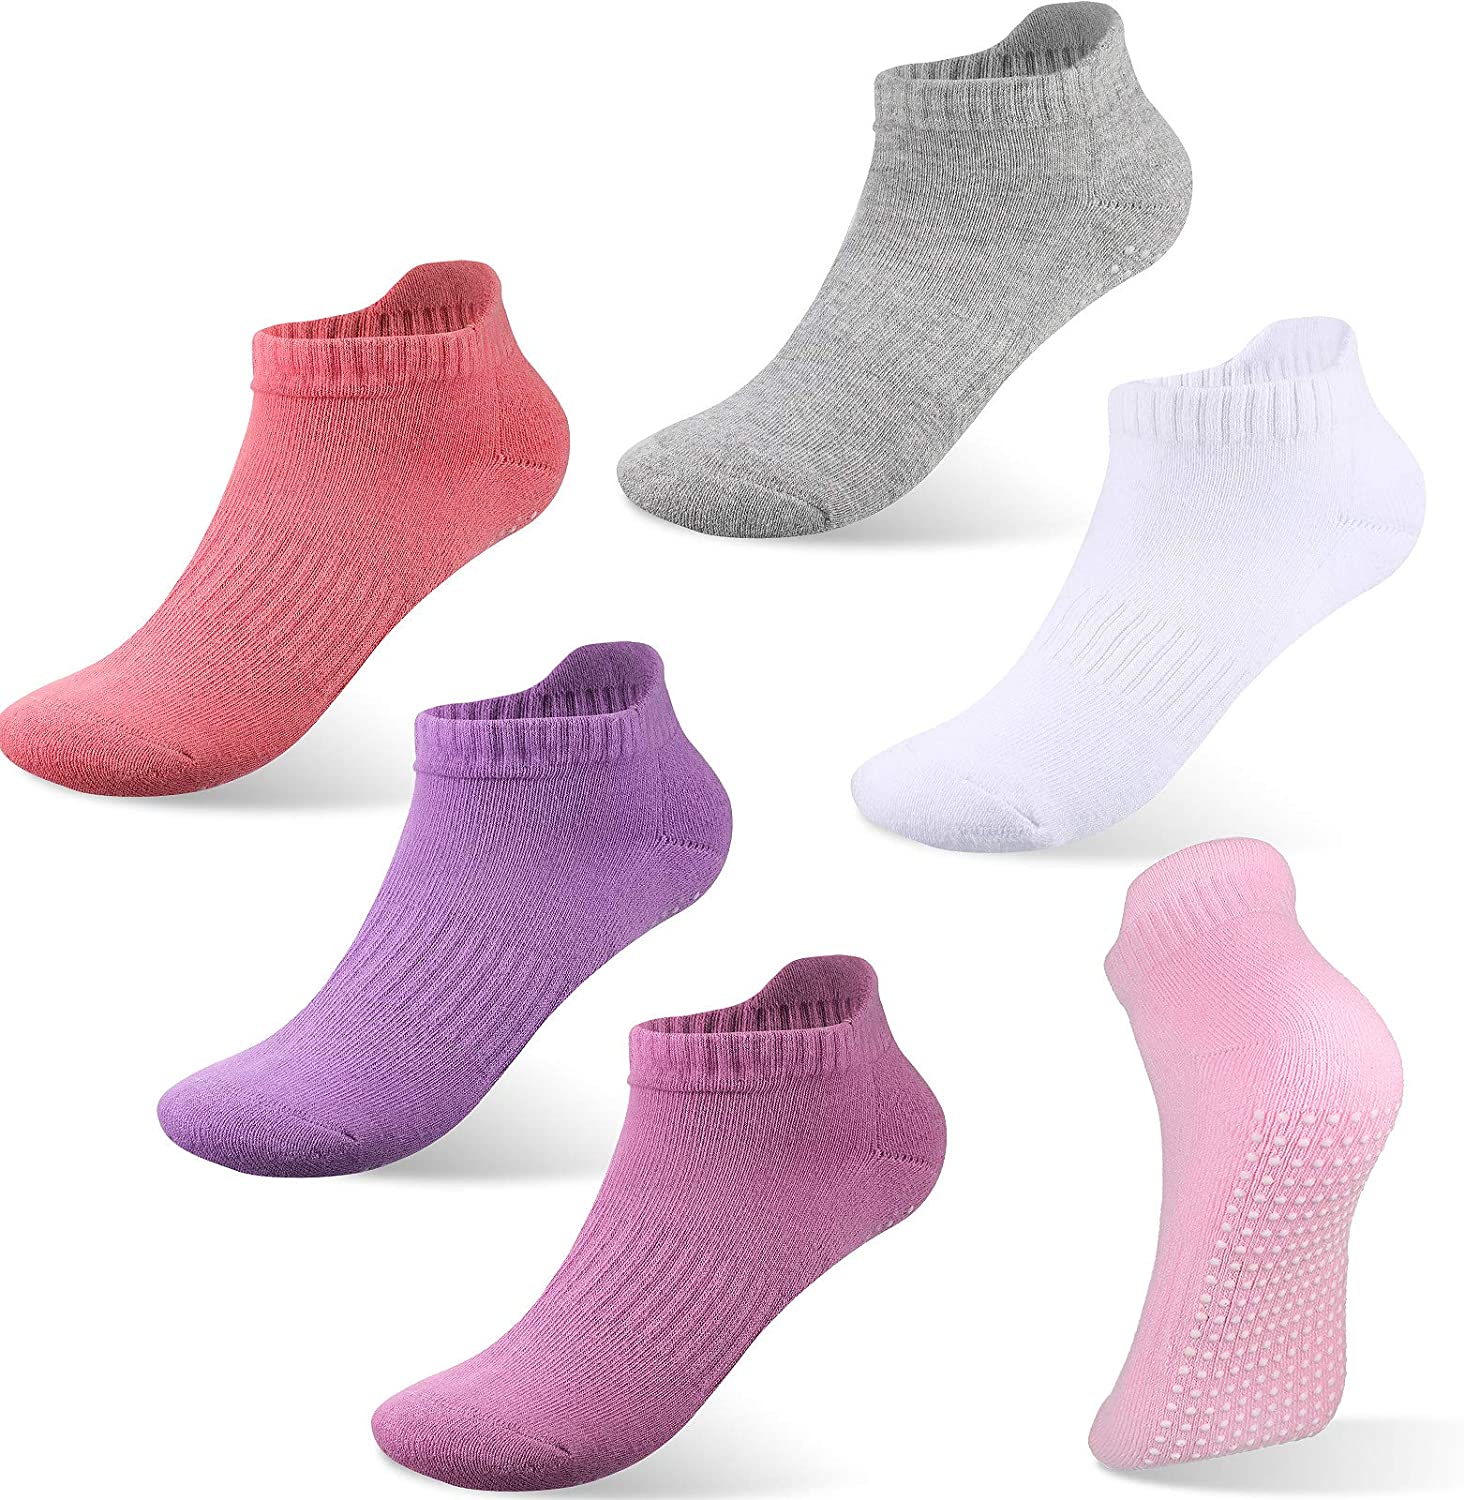 6 pares de calcetines antideslizantes para yoga y pilates antideslizan –